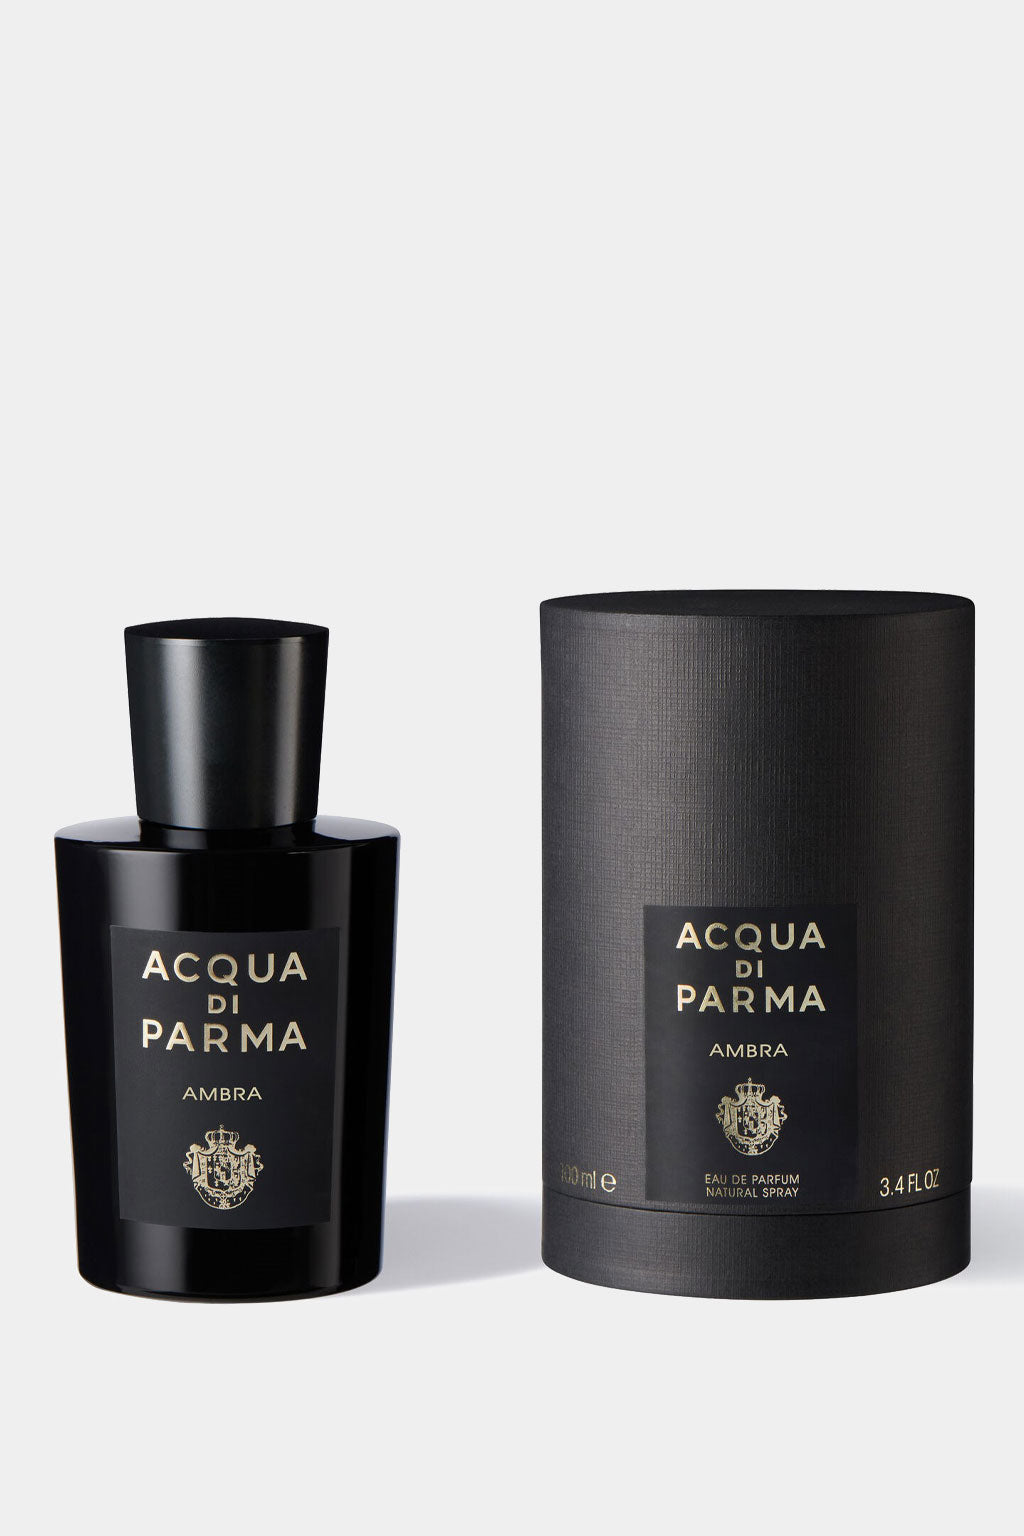 Acqua Di Parma - Ambra Eau de Parfum